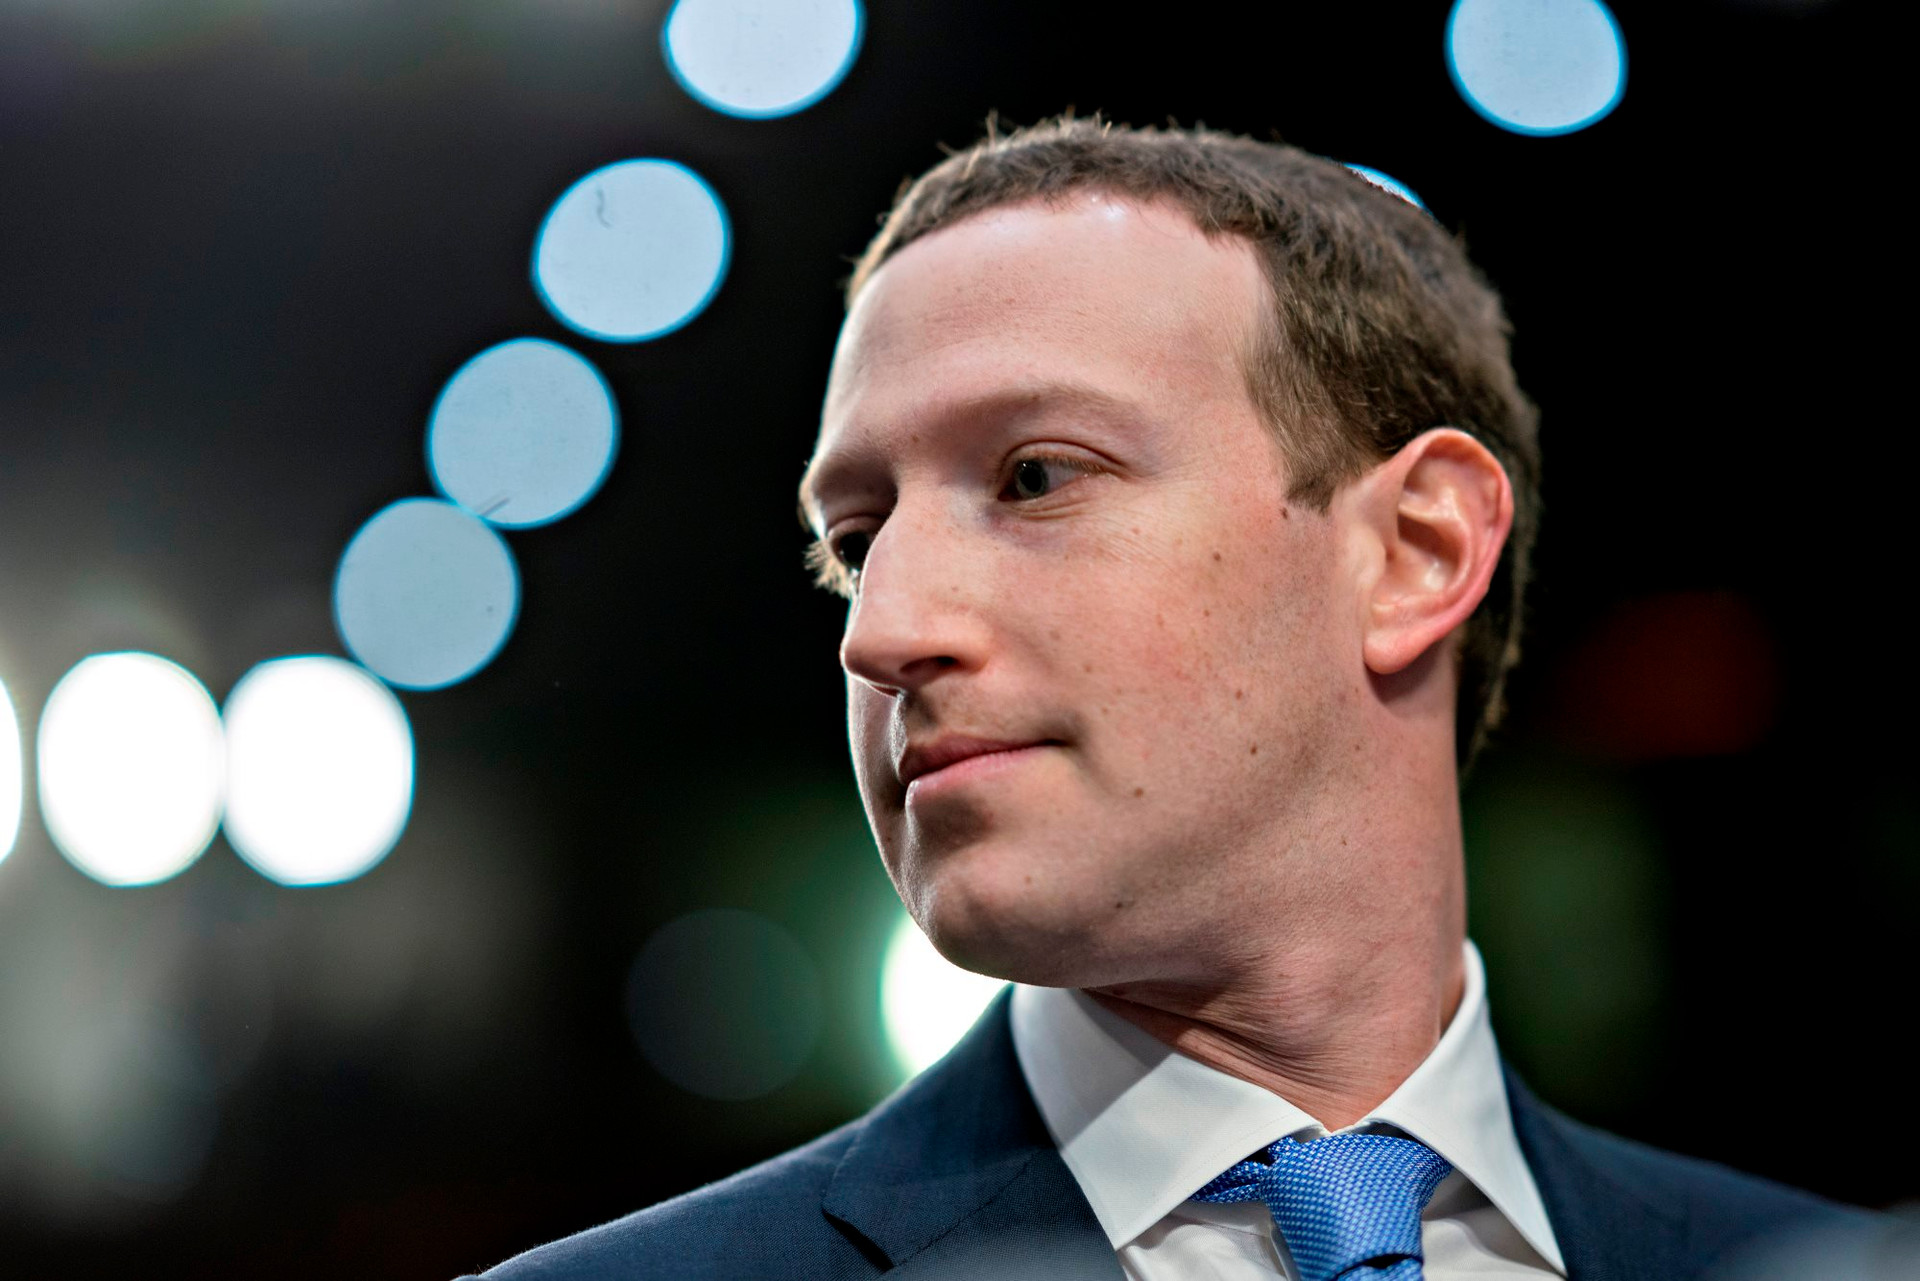 Hành động ngạo mạn của Mark Zuckerberg: ‘Dọa’ bỏ hết tin tức trên Instagram, Facebook nếu California bắt trả tiền cho các tờ báo, giới chính trị gia Mỹ ‘nóng mắt’ - Ảnh 1.